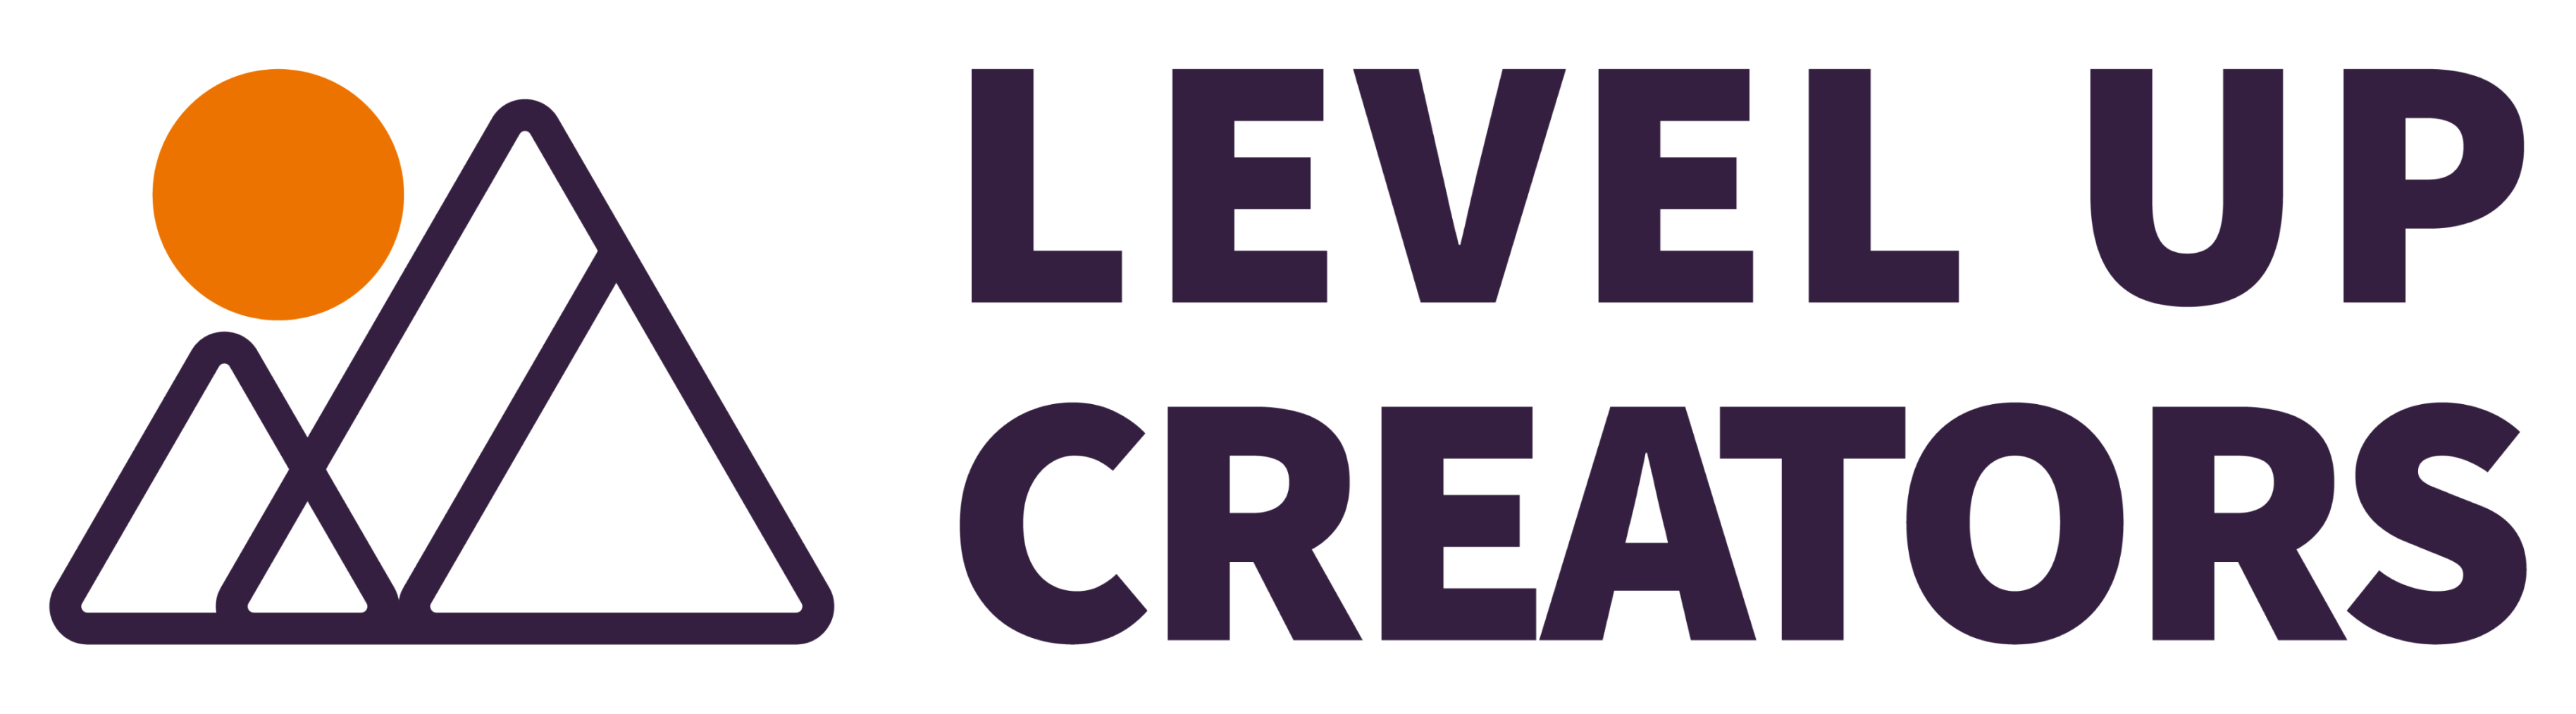 Level Up Creators logo